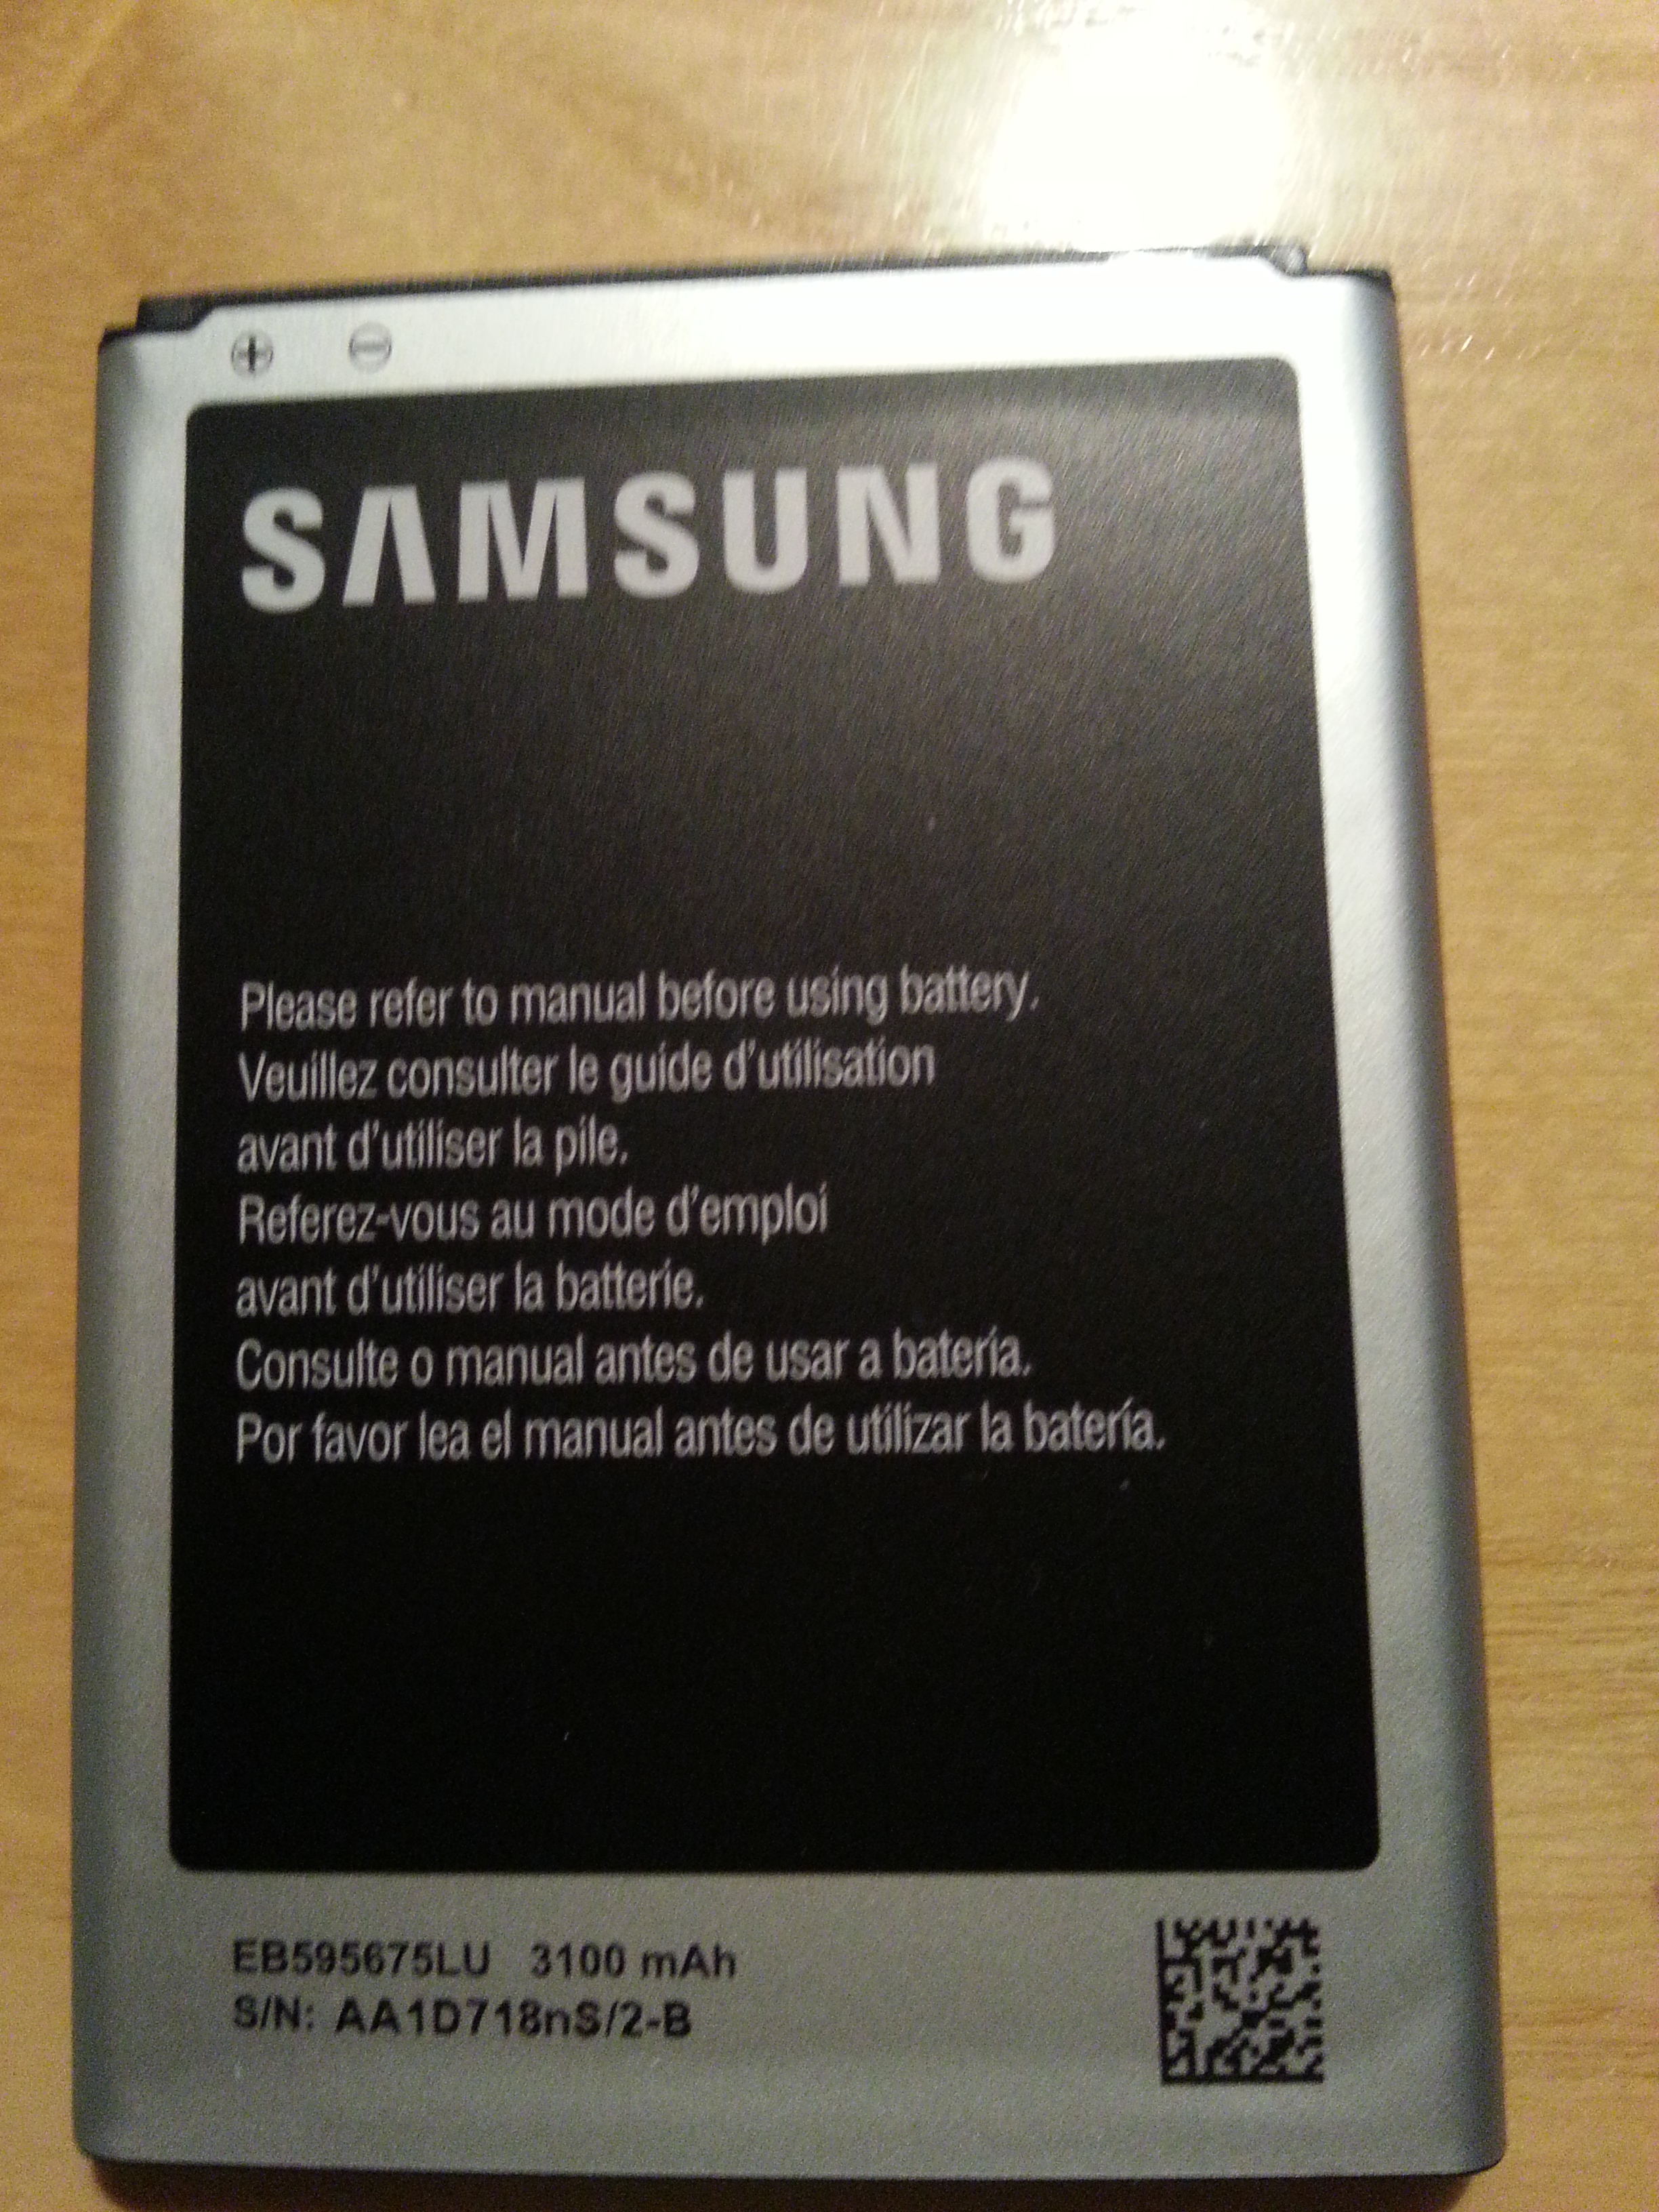 Verifica Autenticità batteria - Samsung Community